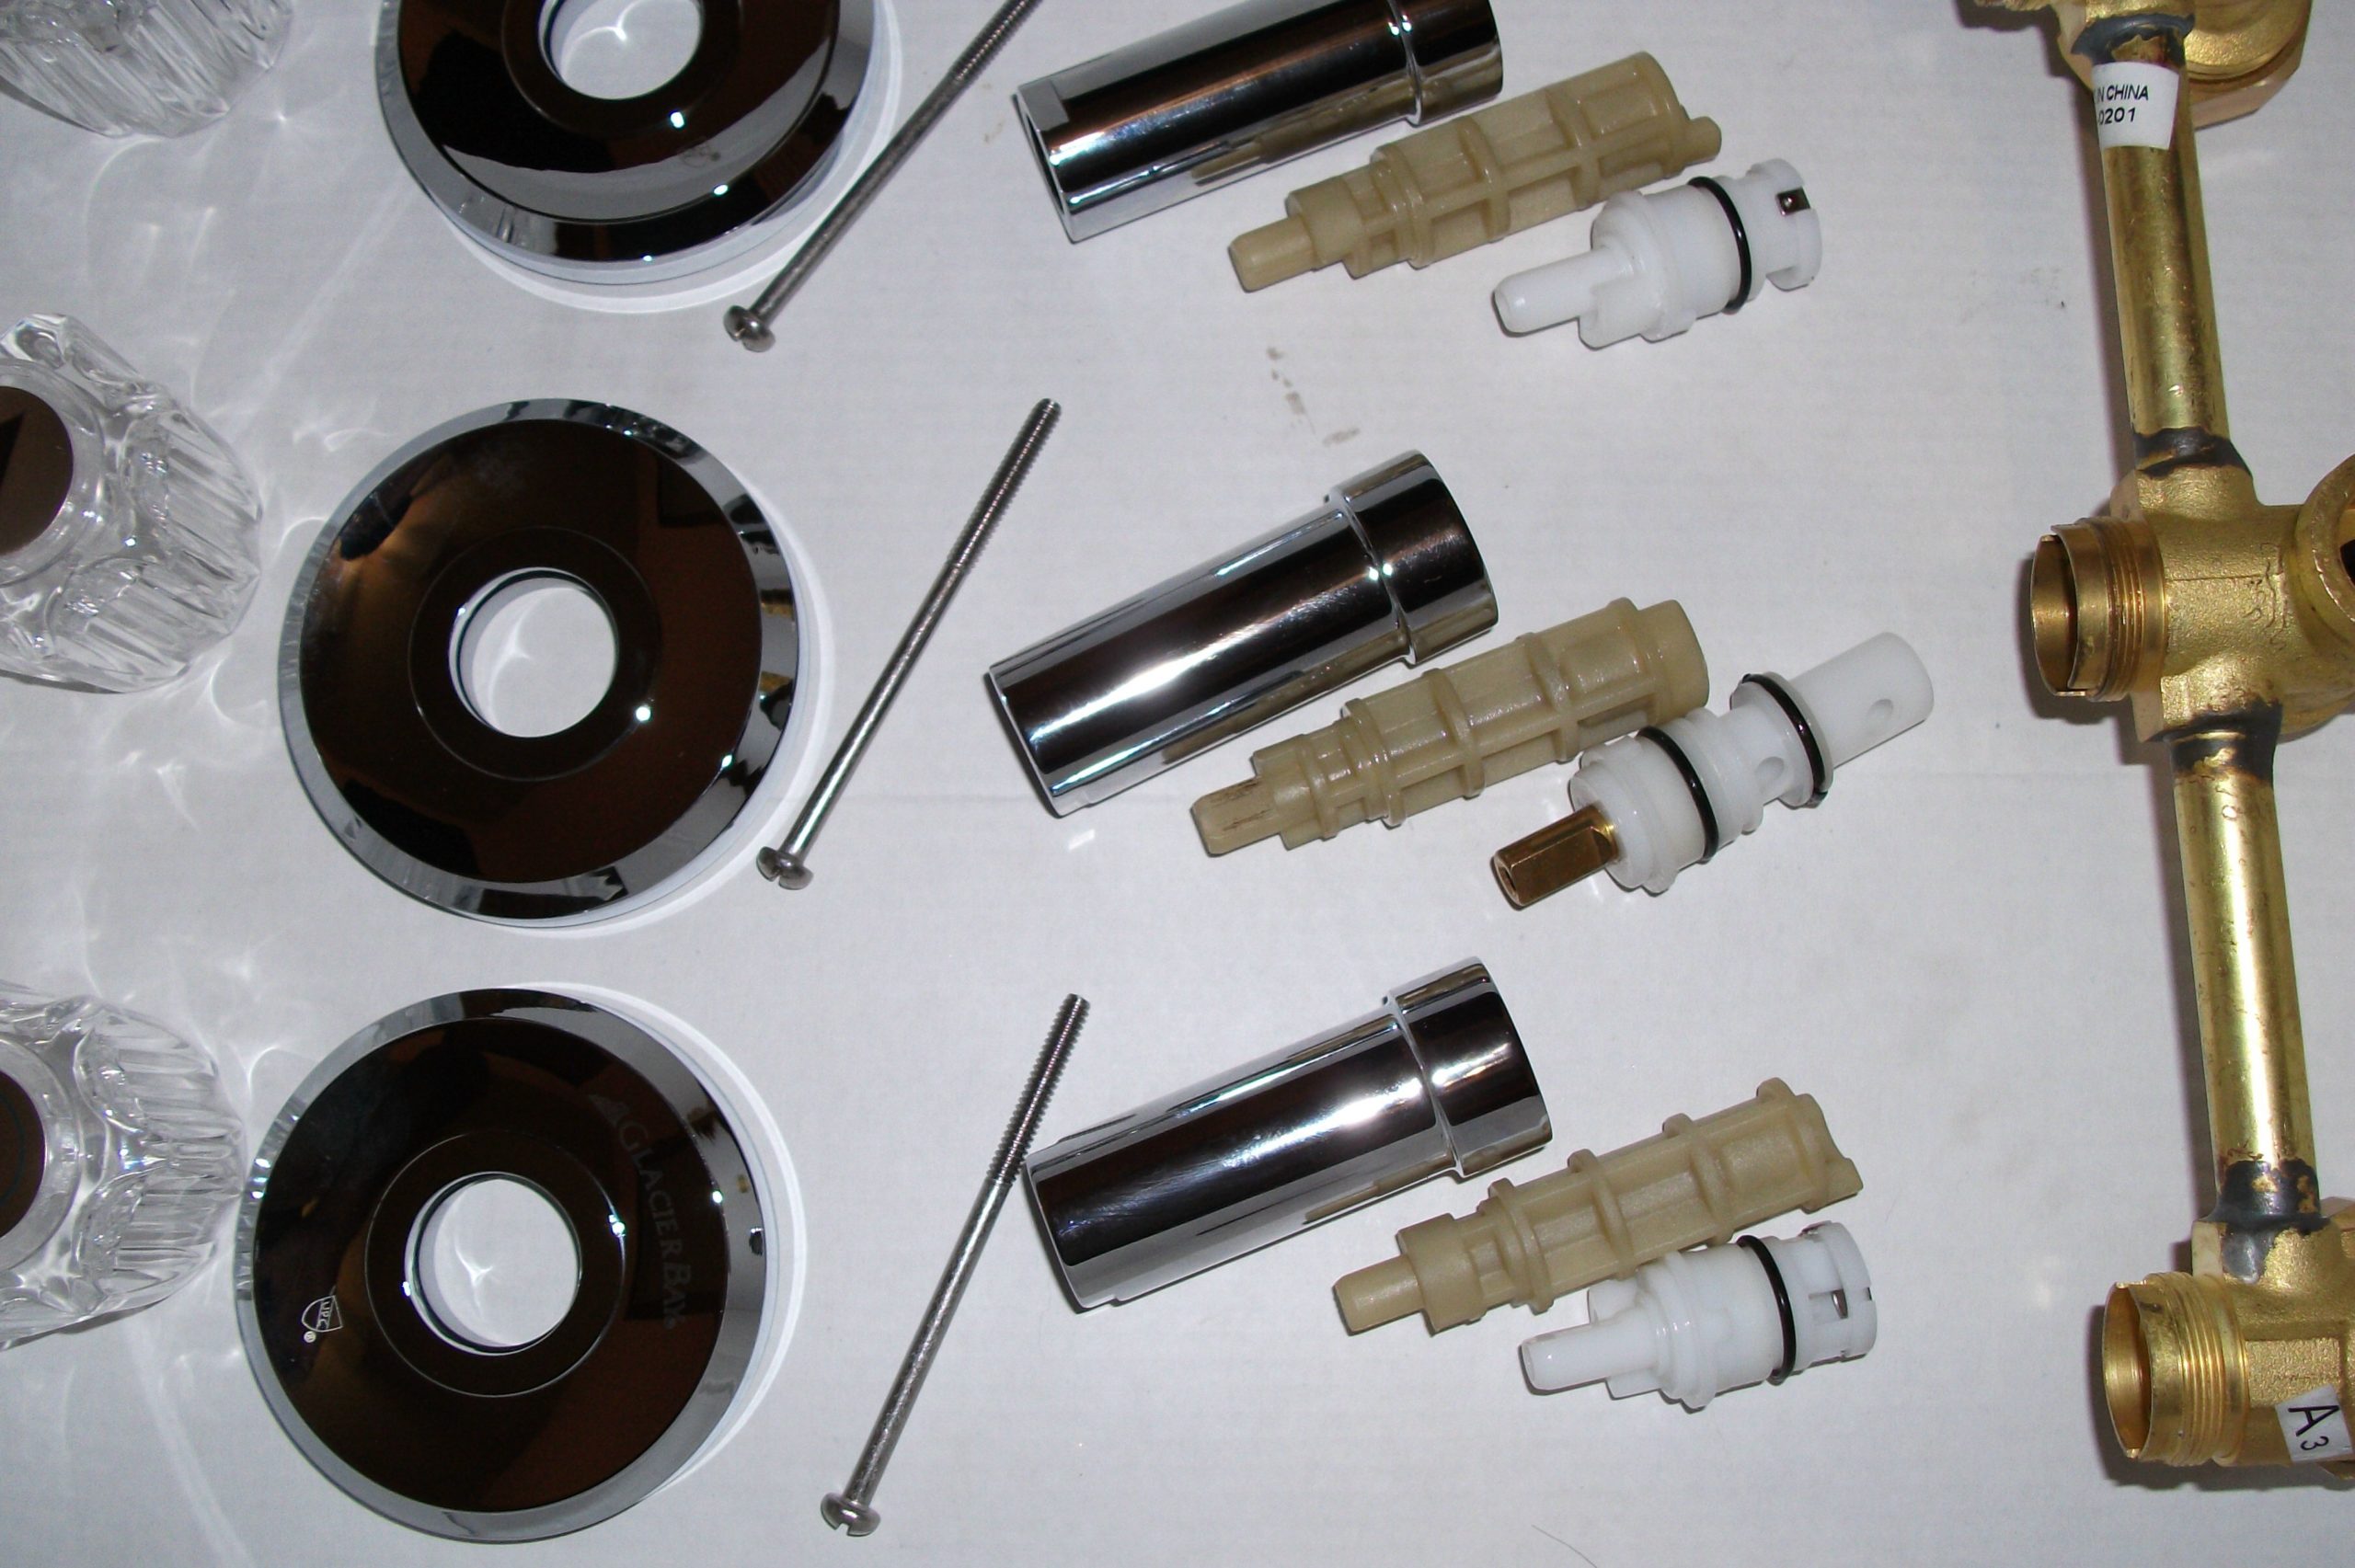 How do you replace a shower diverter valve?